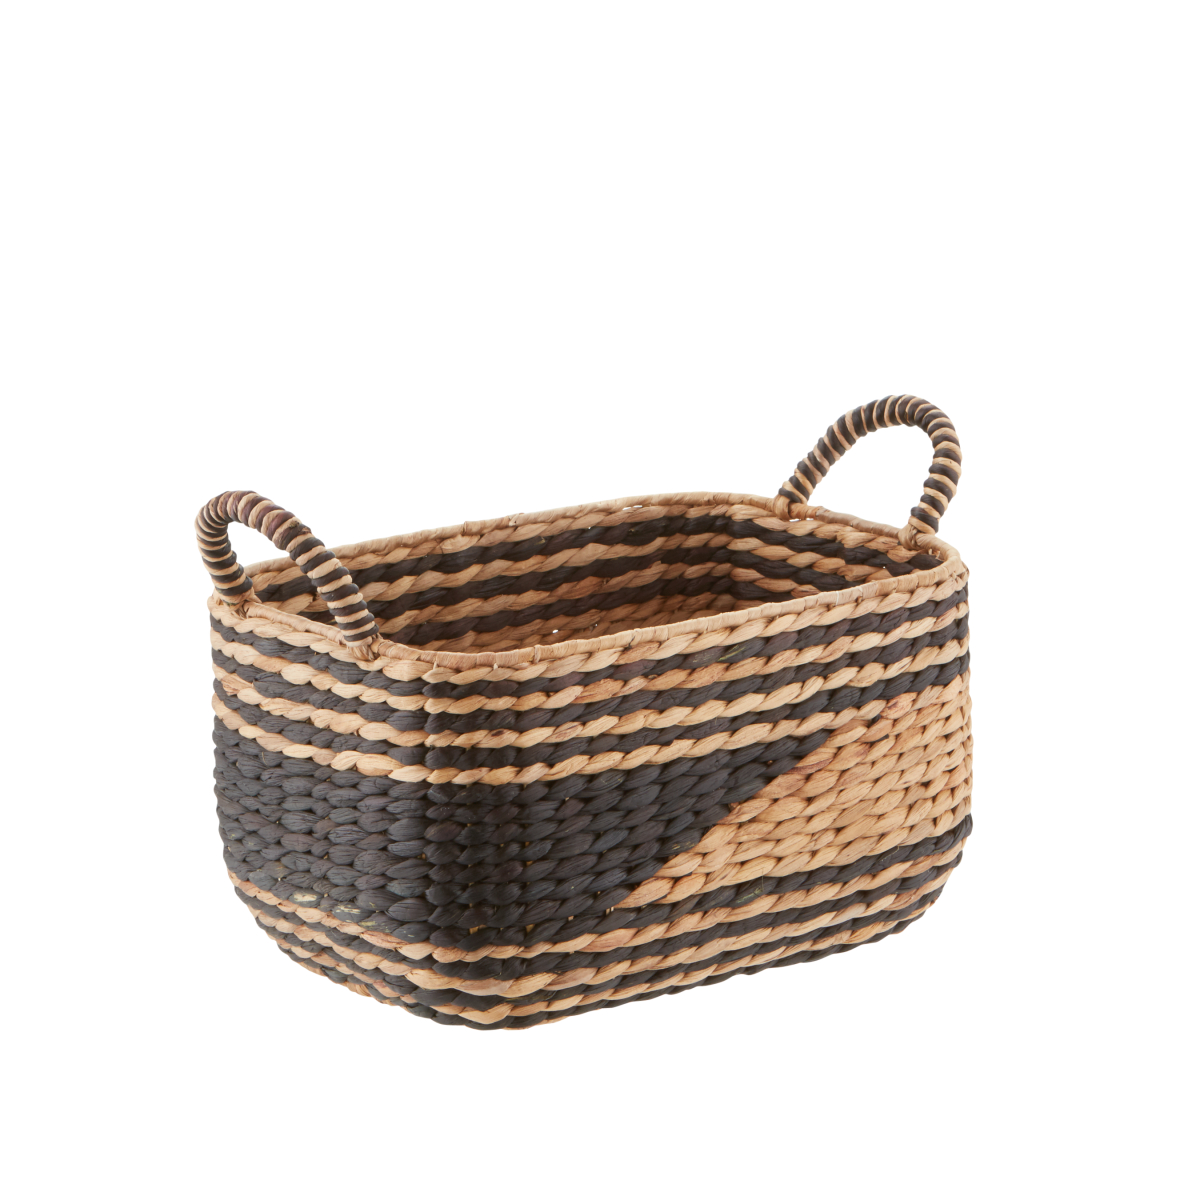 Small Water Hyacinth Basket w/ Handles Natural/Black